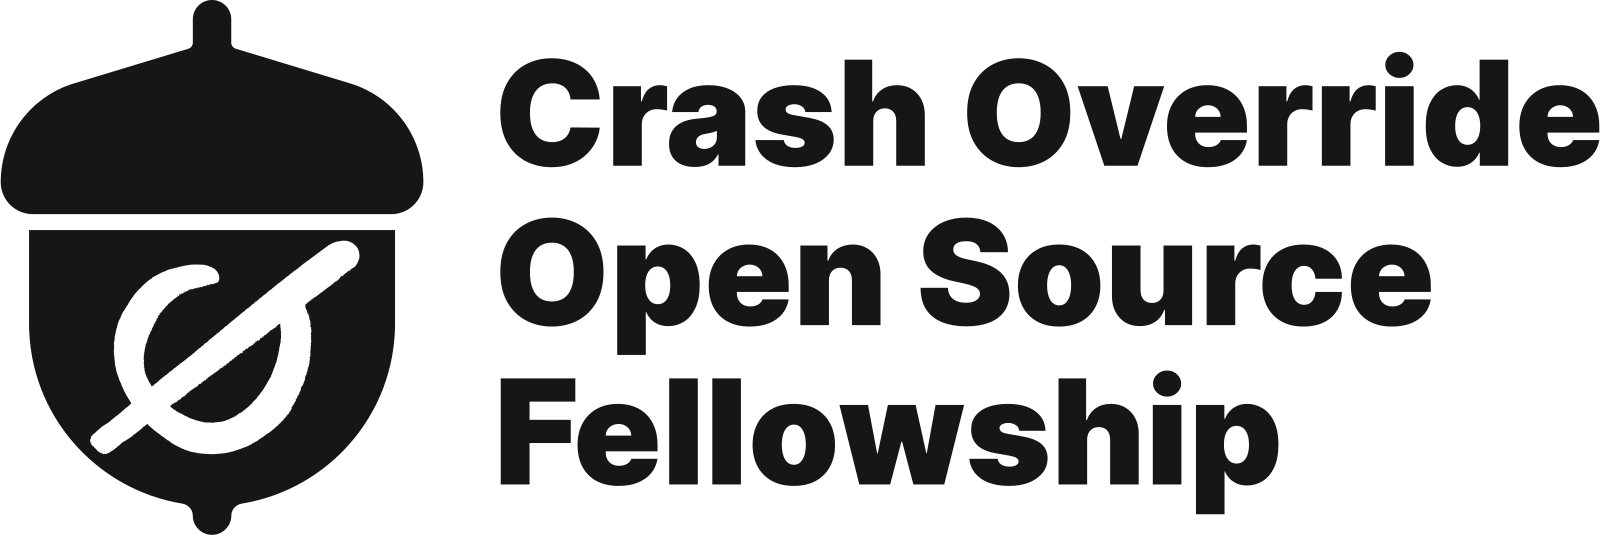 Crash Override Open Source Fellowship logo